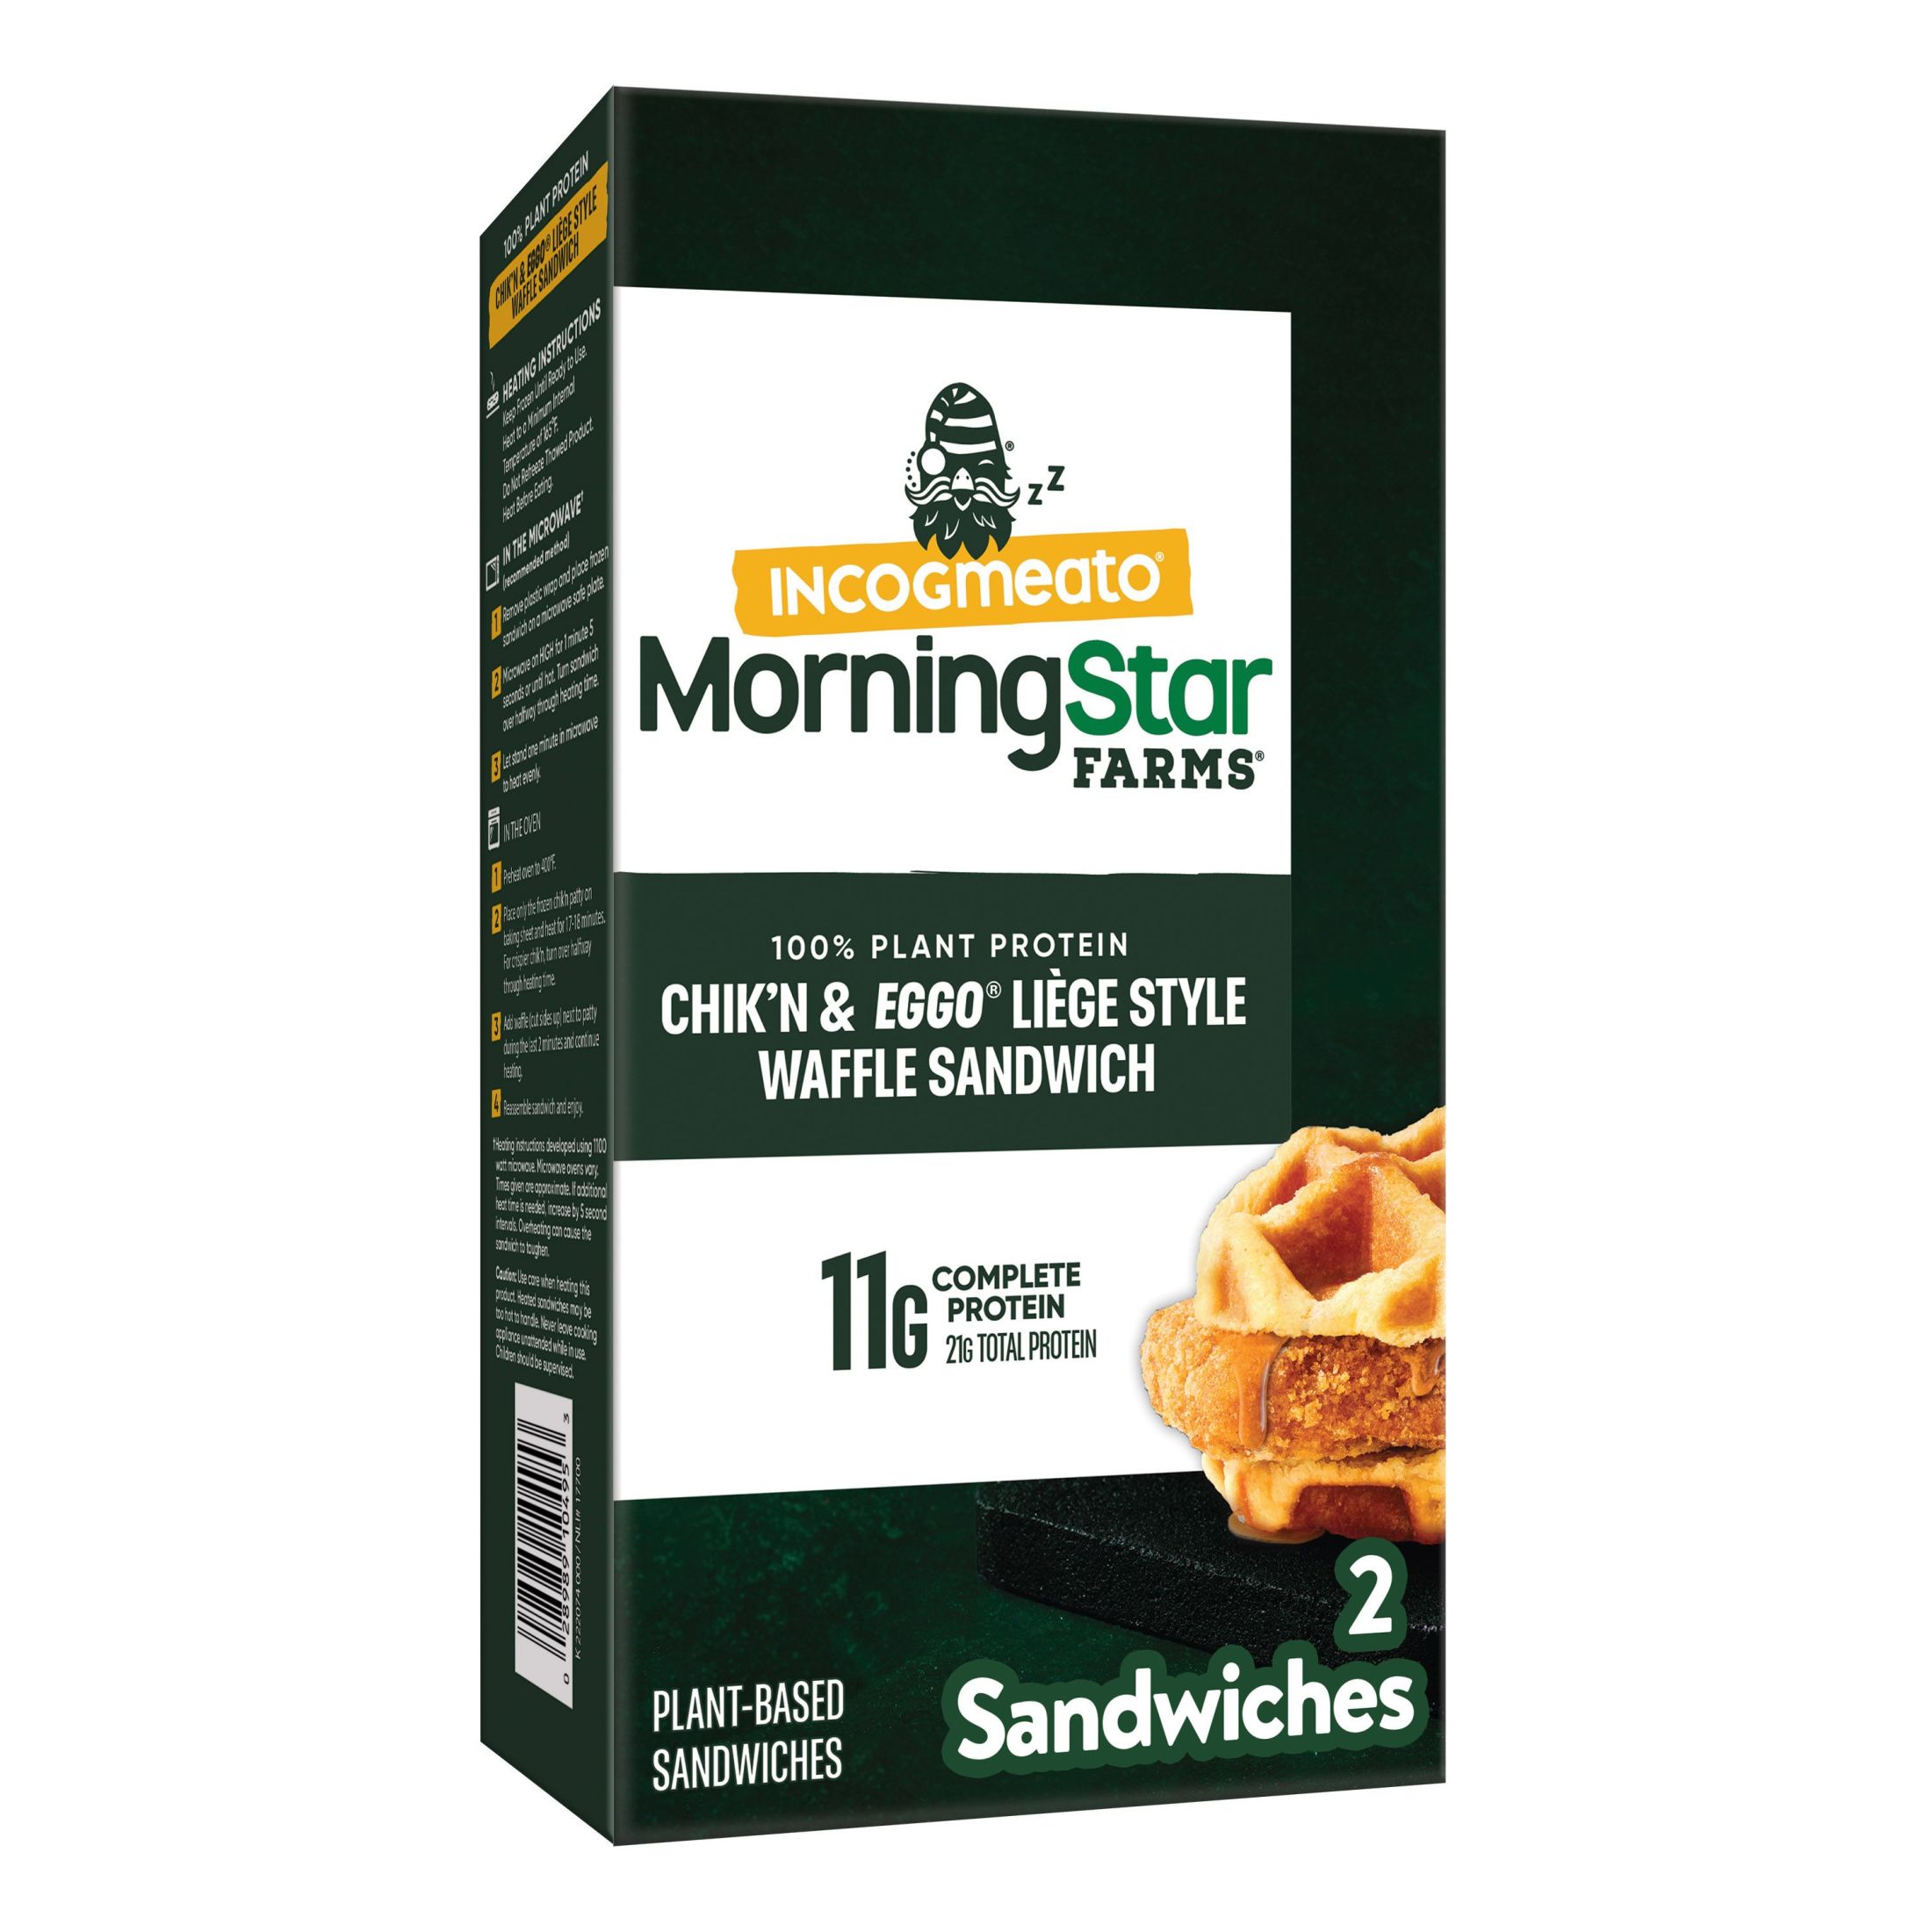 MorningStar Farms Incogmeato Original Meatless Chicken Waffle Sandwich, 9.3 oz (Frozen) - image 1 of 9